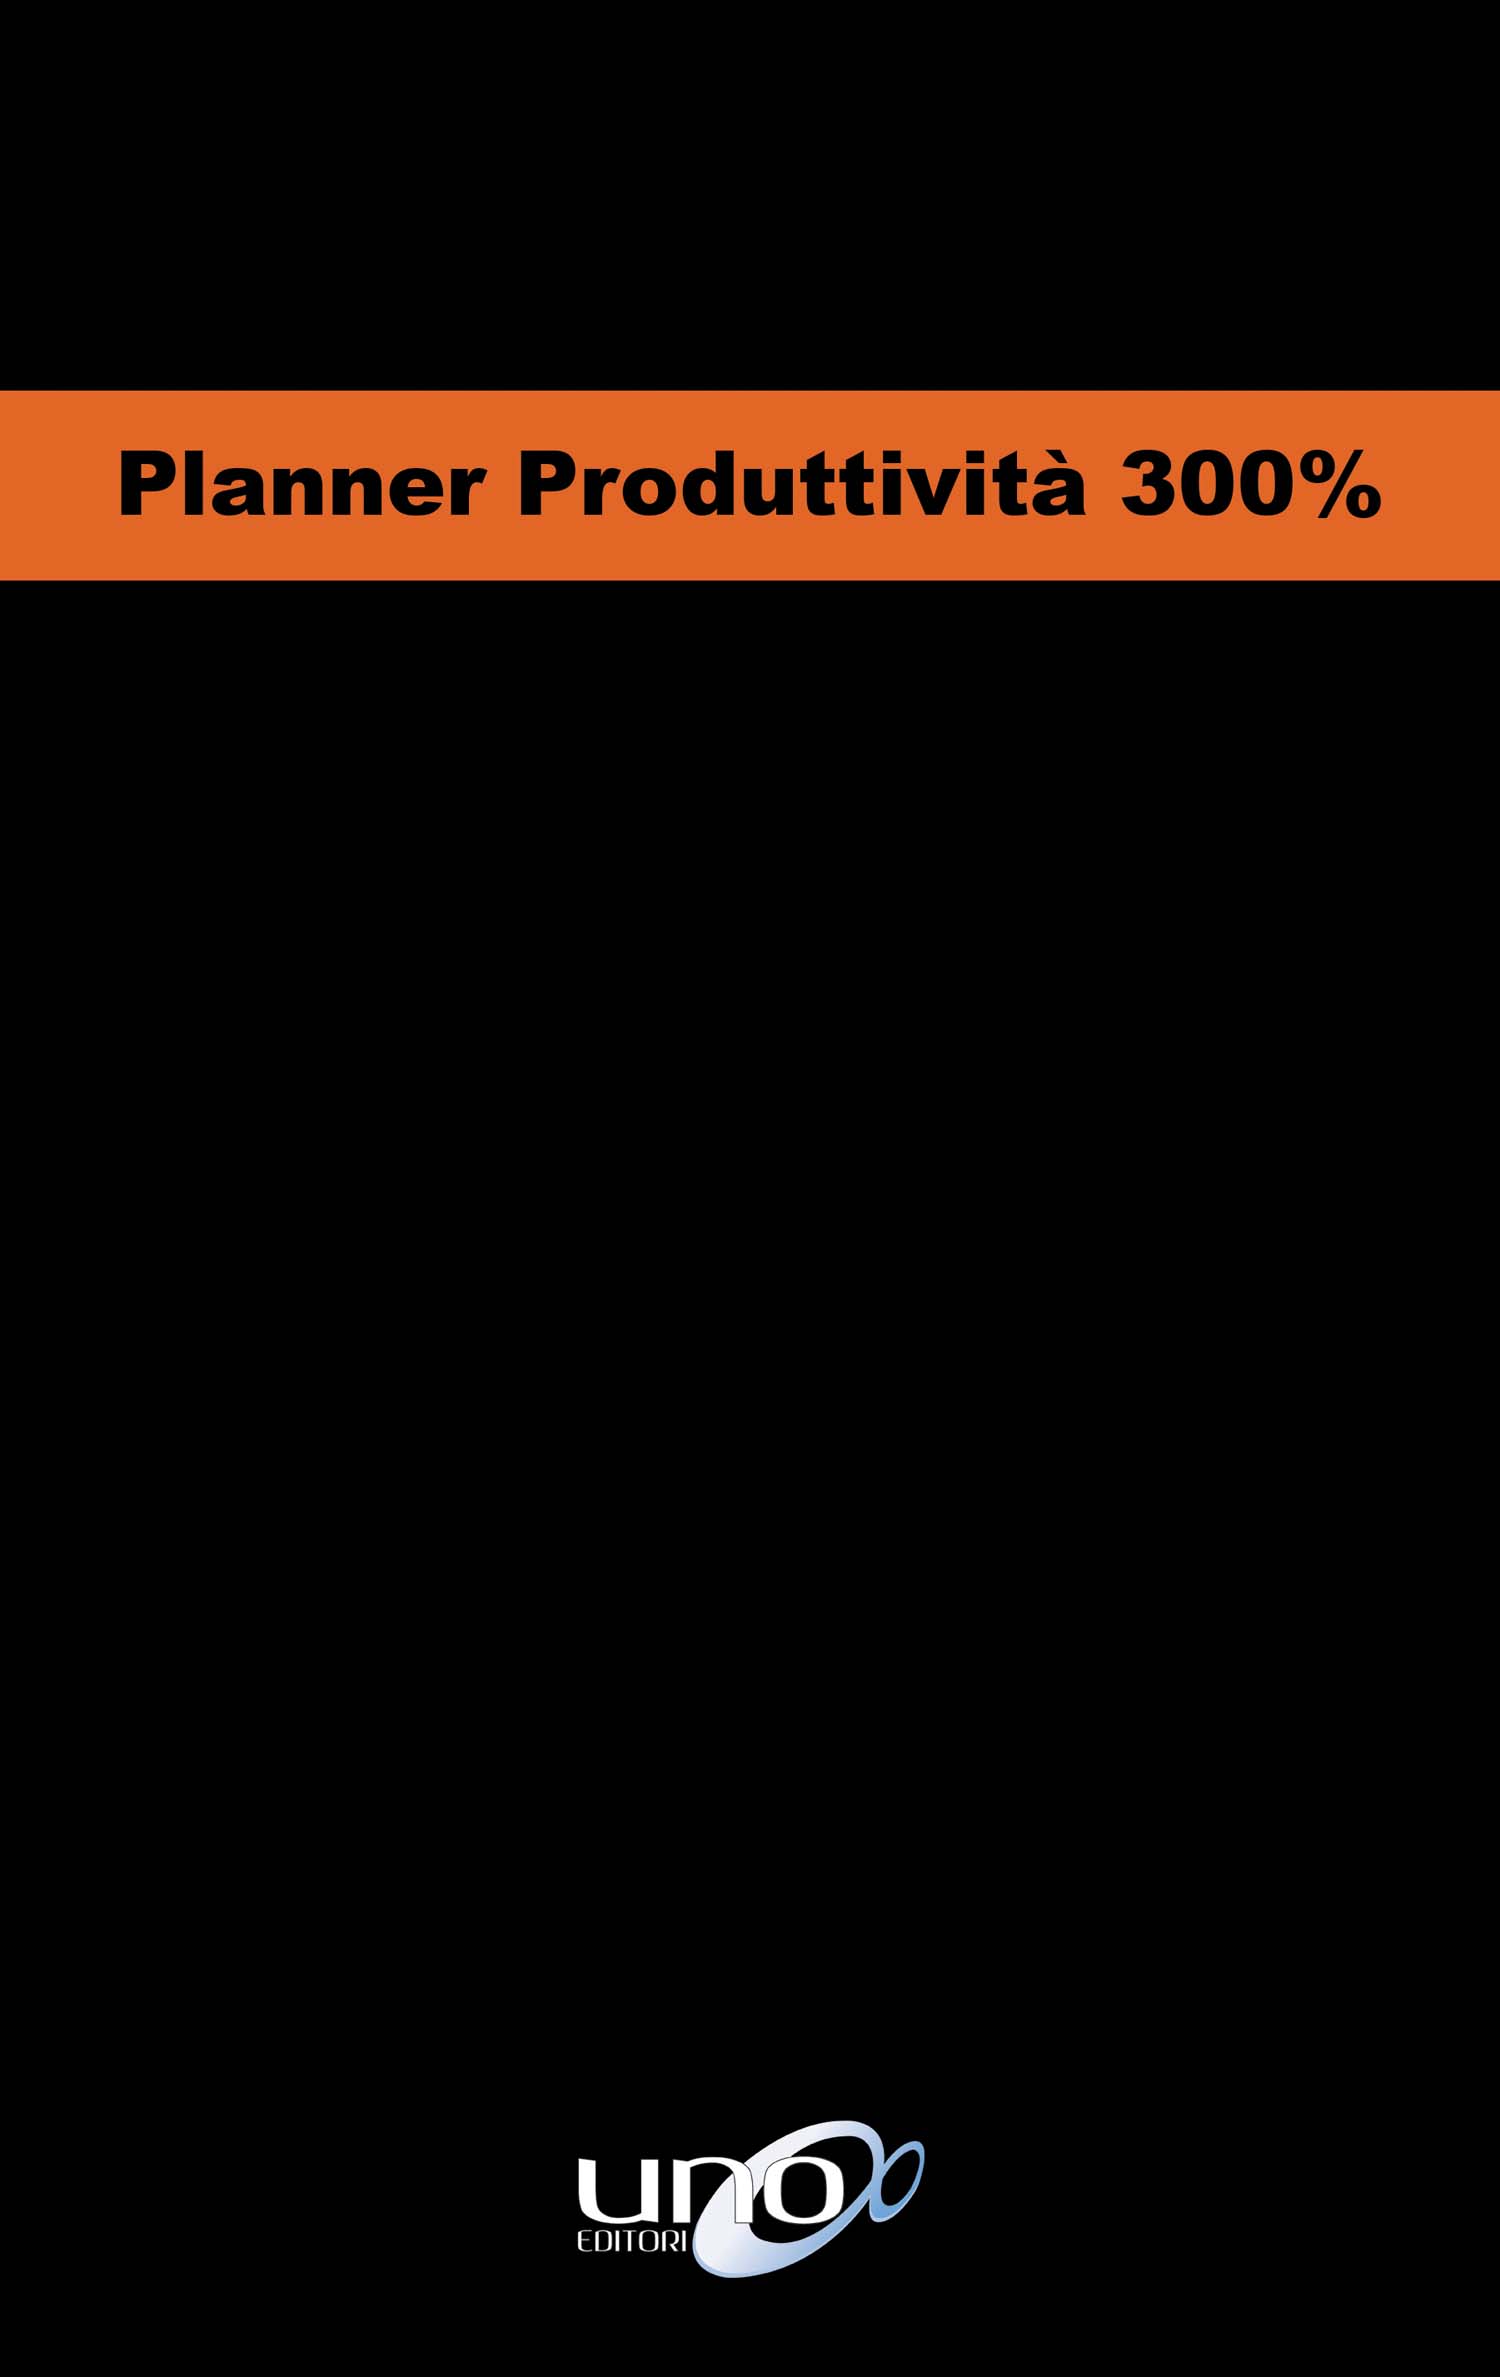 Libri Max Formisano - Planner Produttivita 300% NUOVO SIGILLATO, EDIZIONE DEL 31/10/2018 SUBITO DISPONIBILE